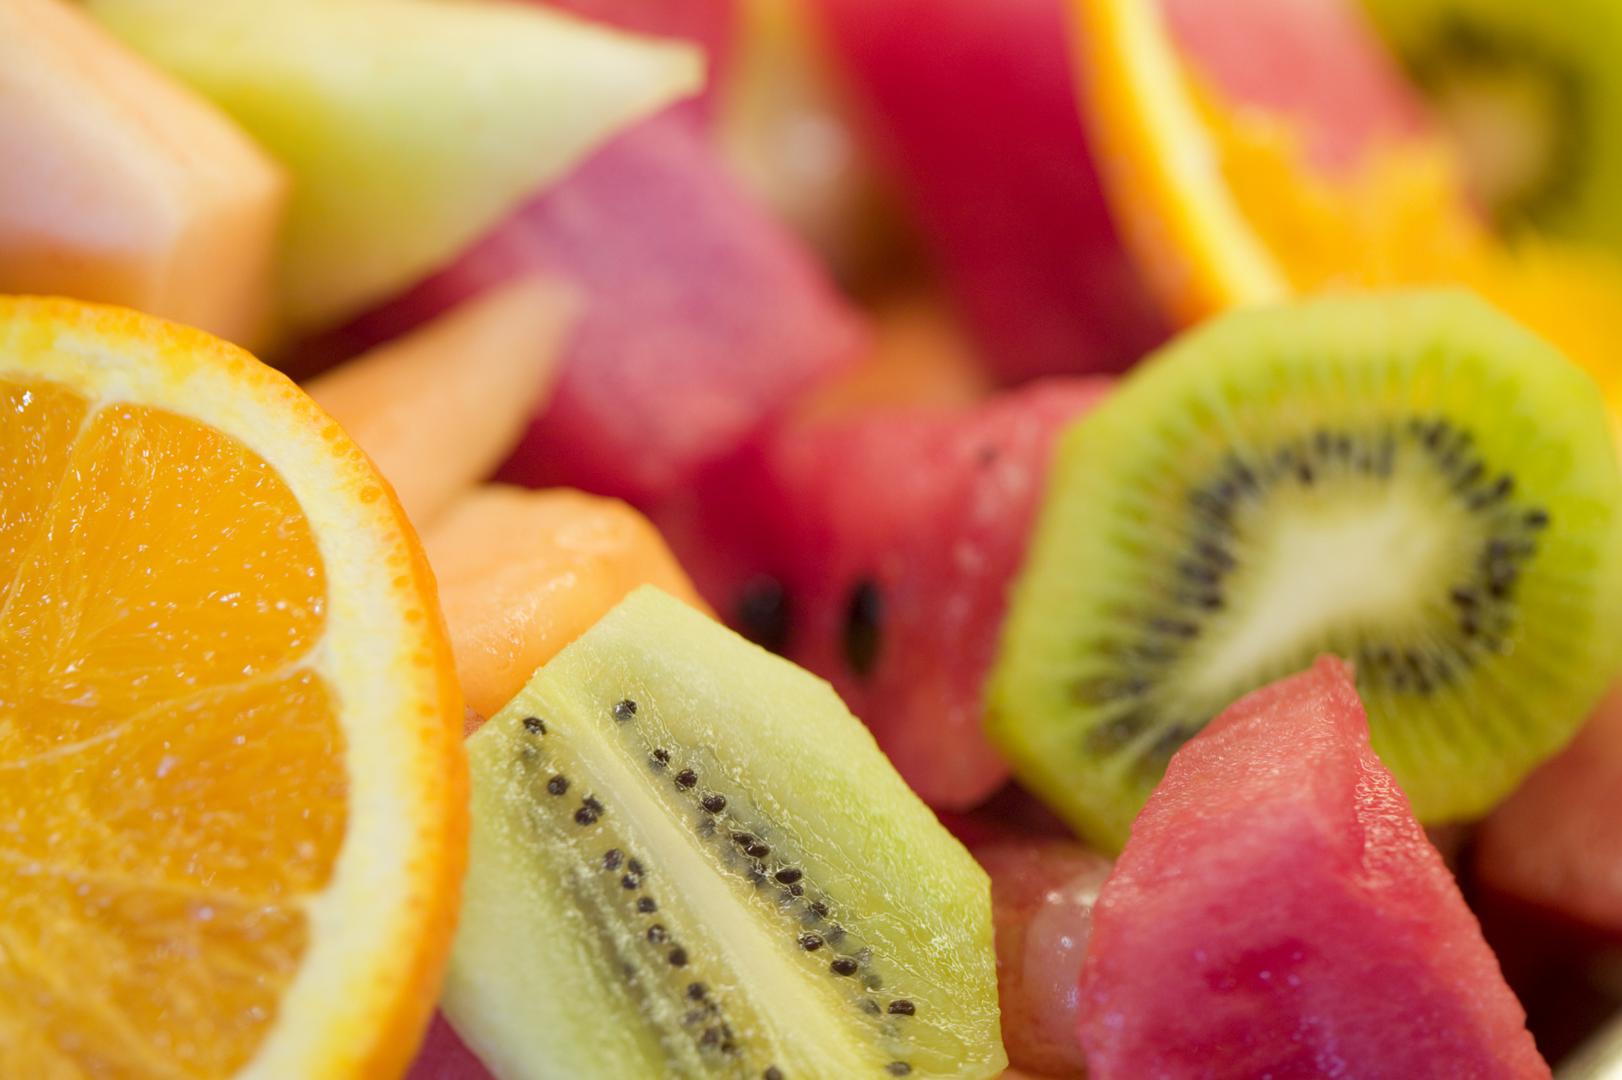 Jutro je najbolje doba dana da se pojede voće jer se tada najbrže probavi voćni šećer i opskrbi naše tijelo potrebnim nutrijentima za dan pred nama.

